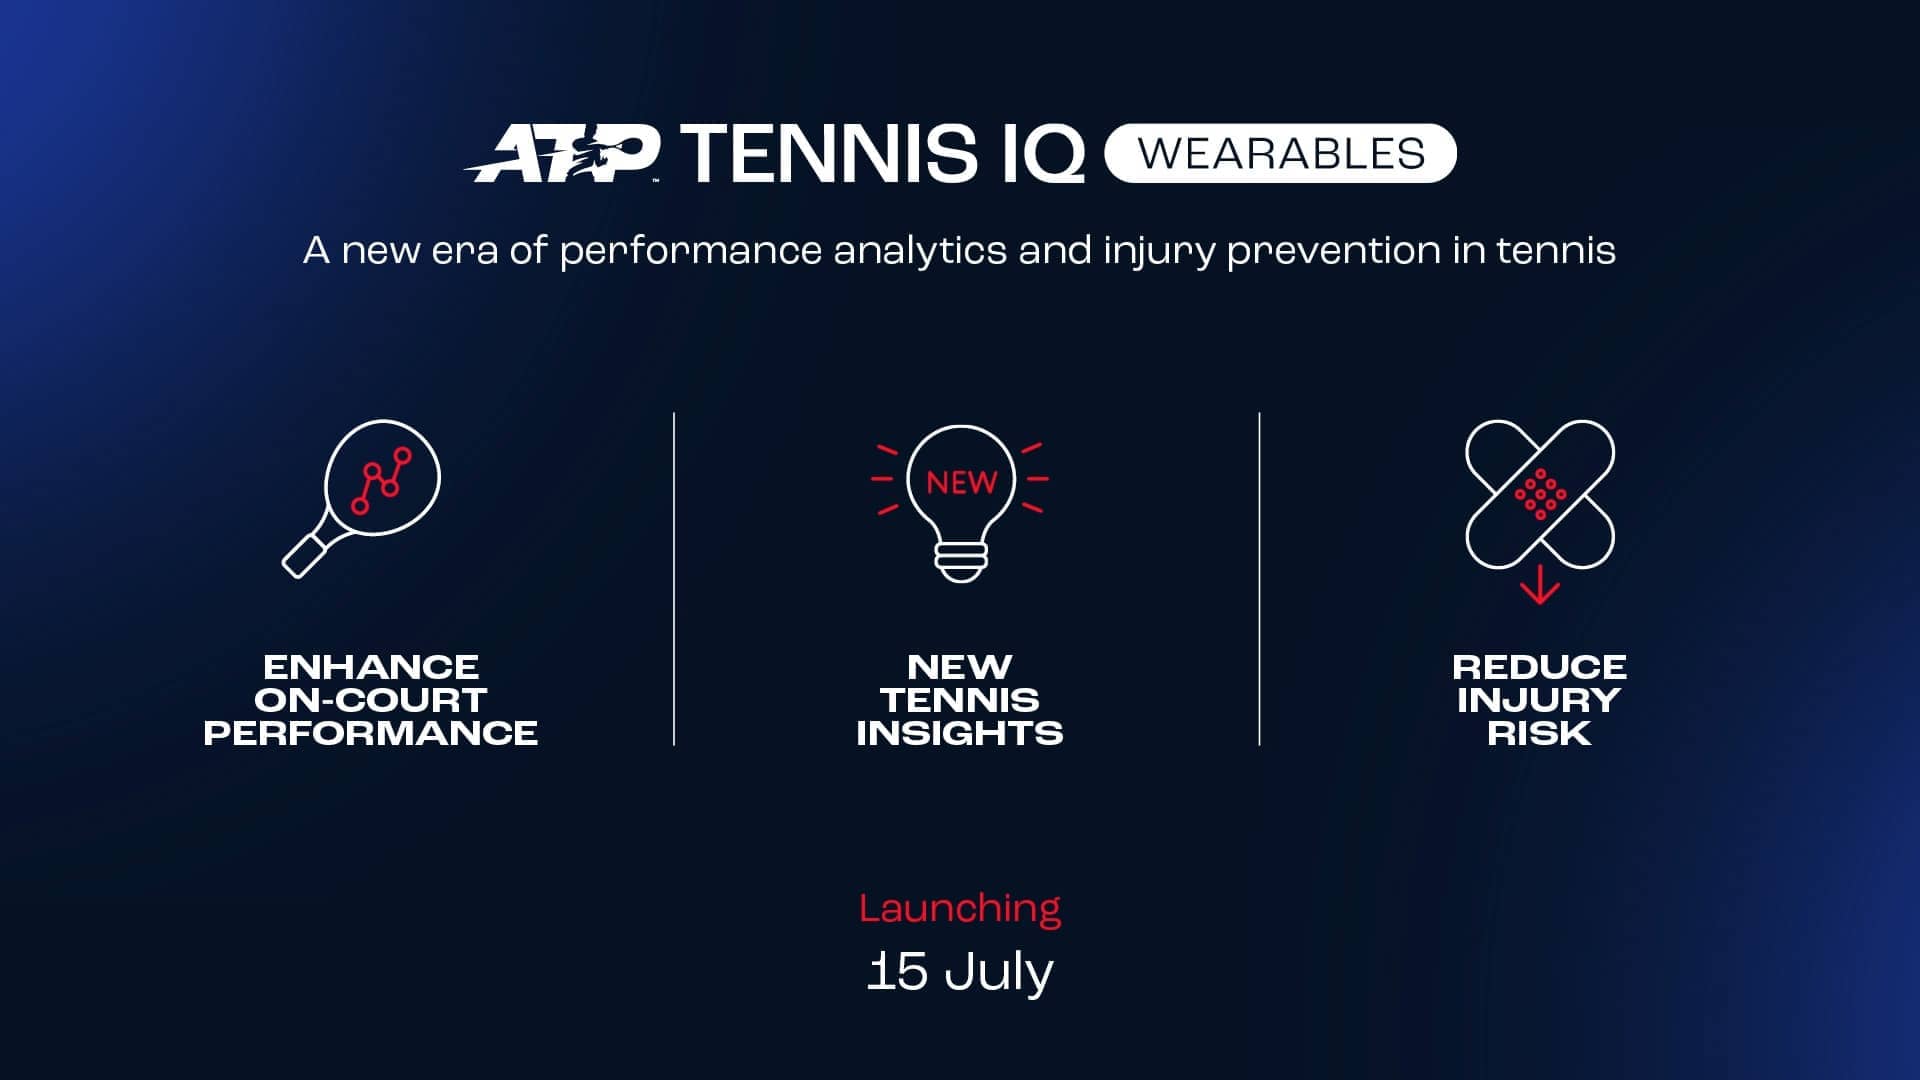 La ATP aprueba los wearables en competición para mejorar el rendimiento y la recuperación de los jugadores